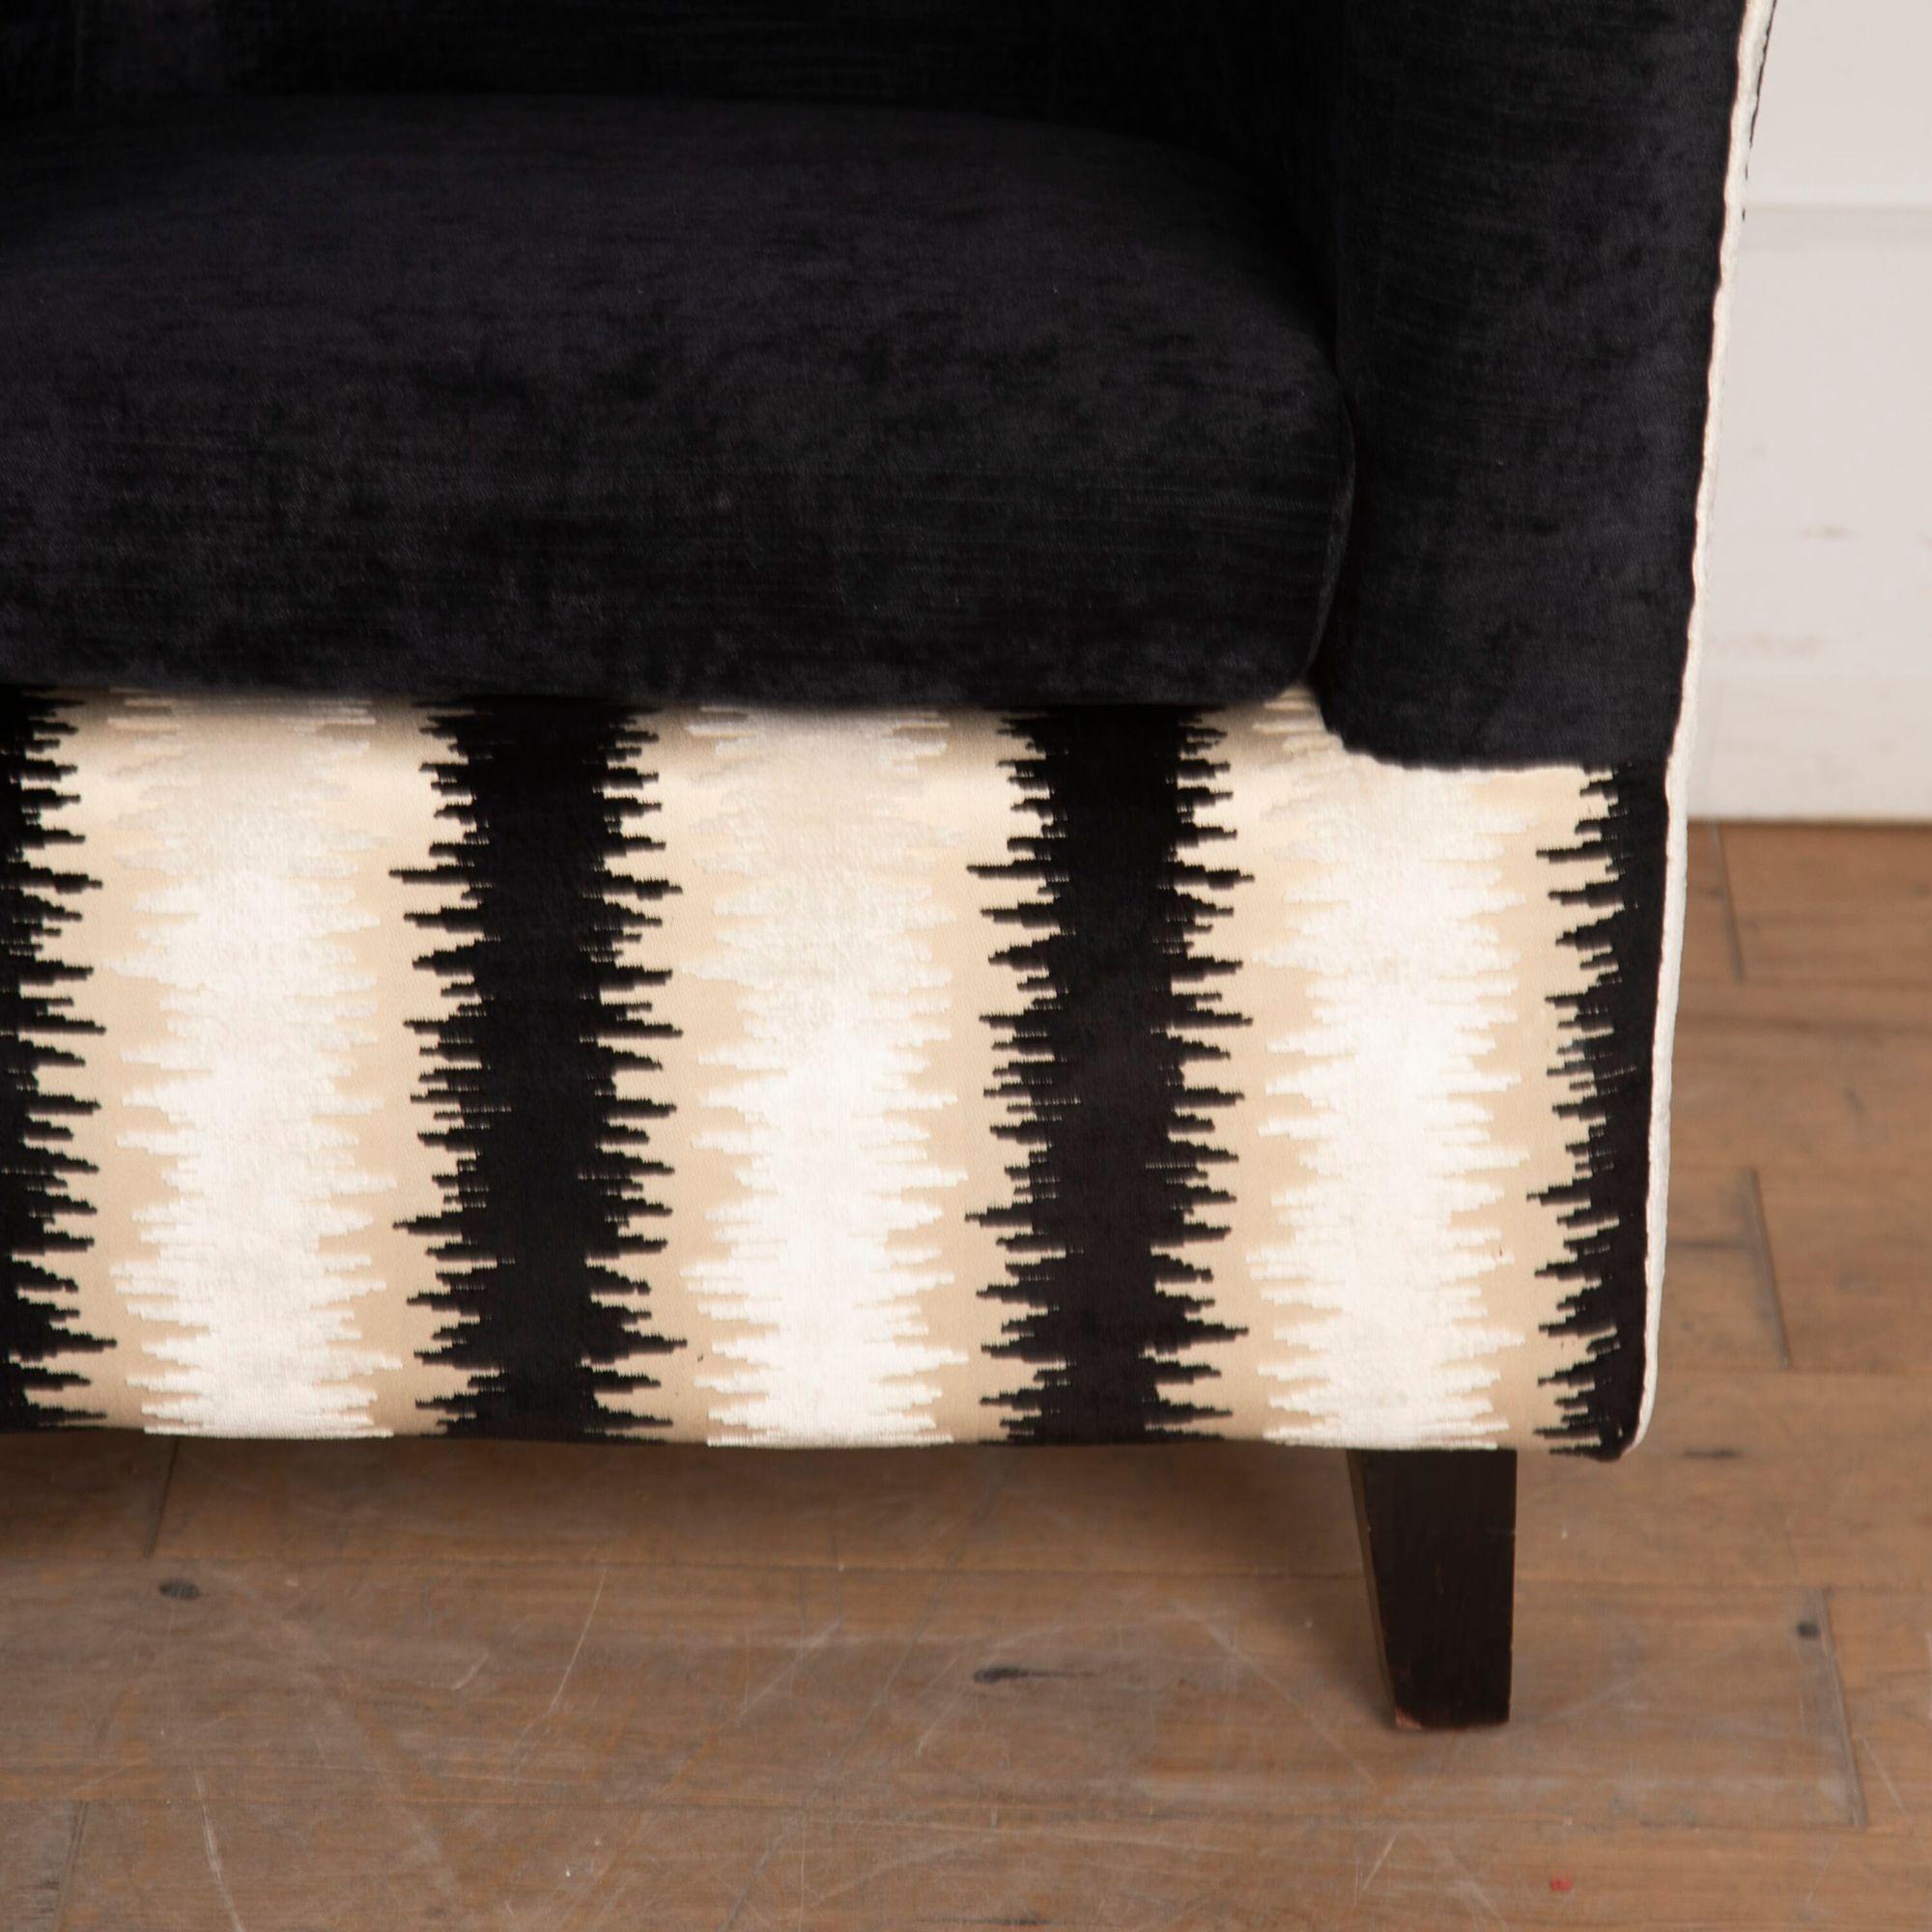 Ein Paar französischer Art Deco Sessel, neu gepolstert, in äußerst attraktiver Form.
Das schwarz-beige Muster und die Form der Sessel passen sowohl zum Art-déco- als auch zum Minimal-Stil.